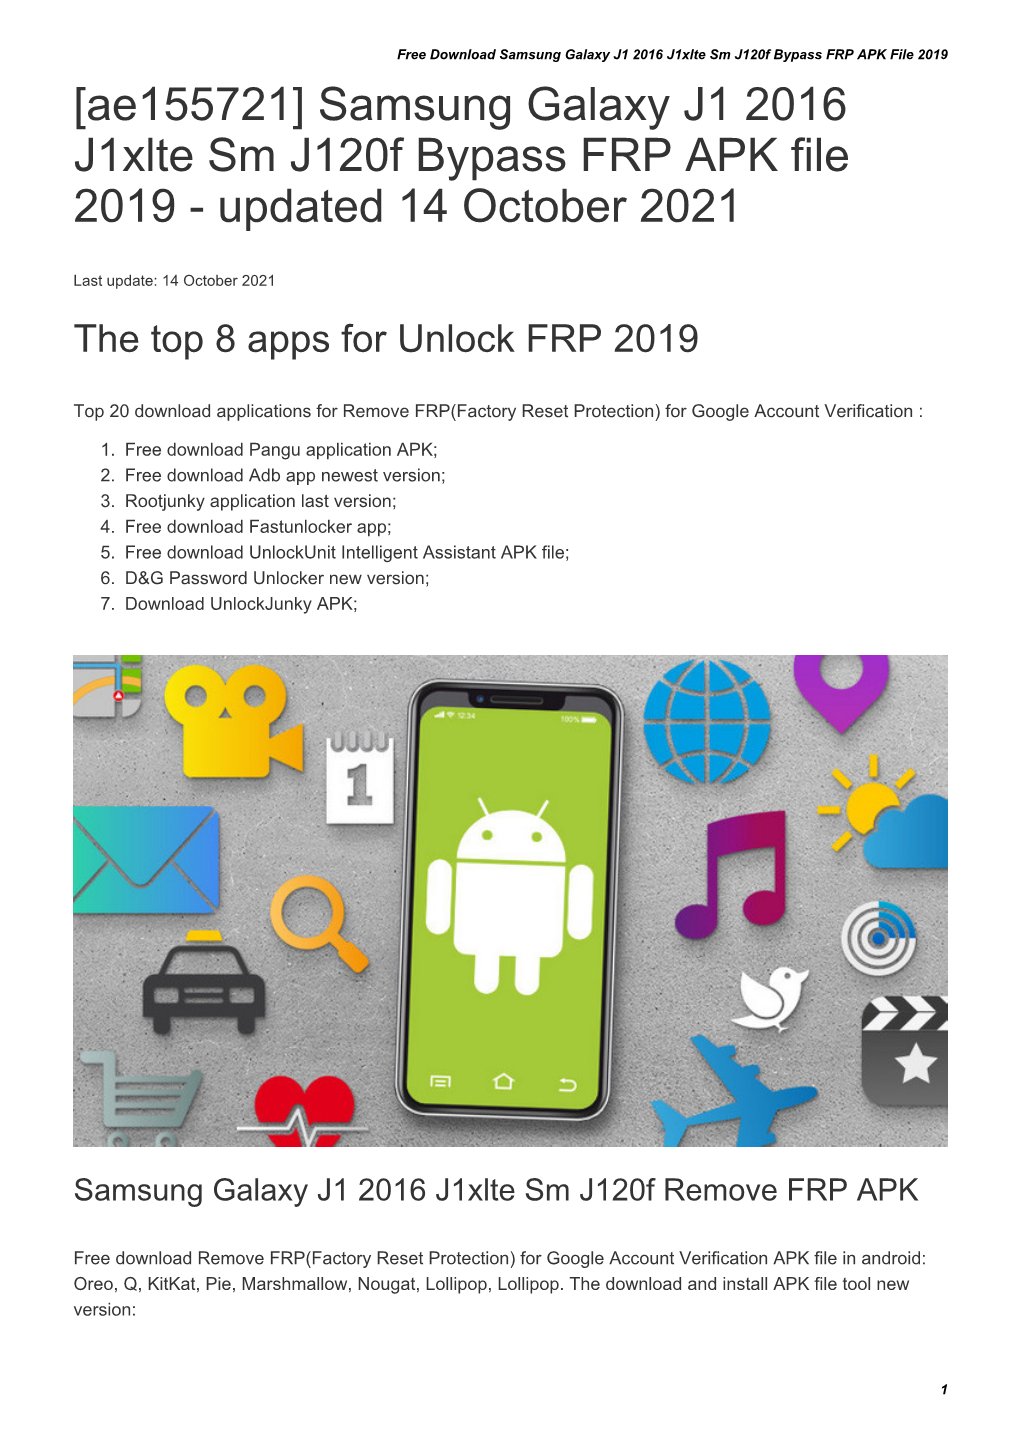 Samsung Galaxy J1 2016 J1xlte Sm J120f Bypass FRP APK File 2019 [Ae155721] Samsung Galaxy J1 2016 J1xlte Sm J120f Bypass FRP APK File 2019 - Updated 14 October 2021